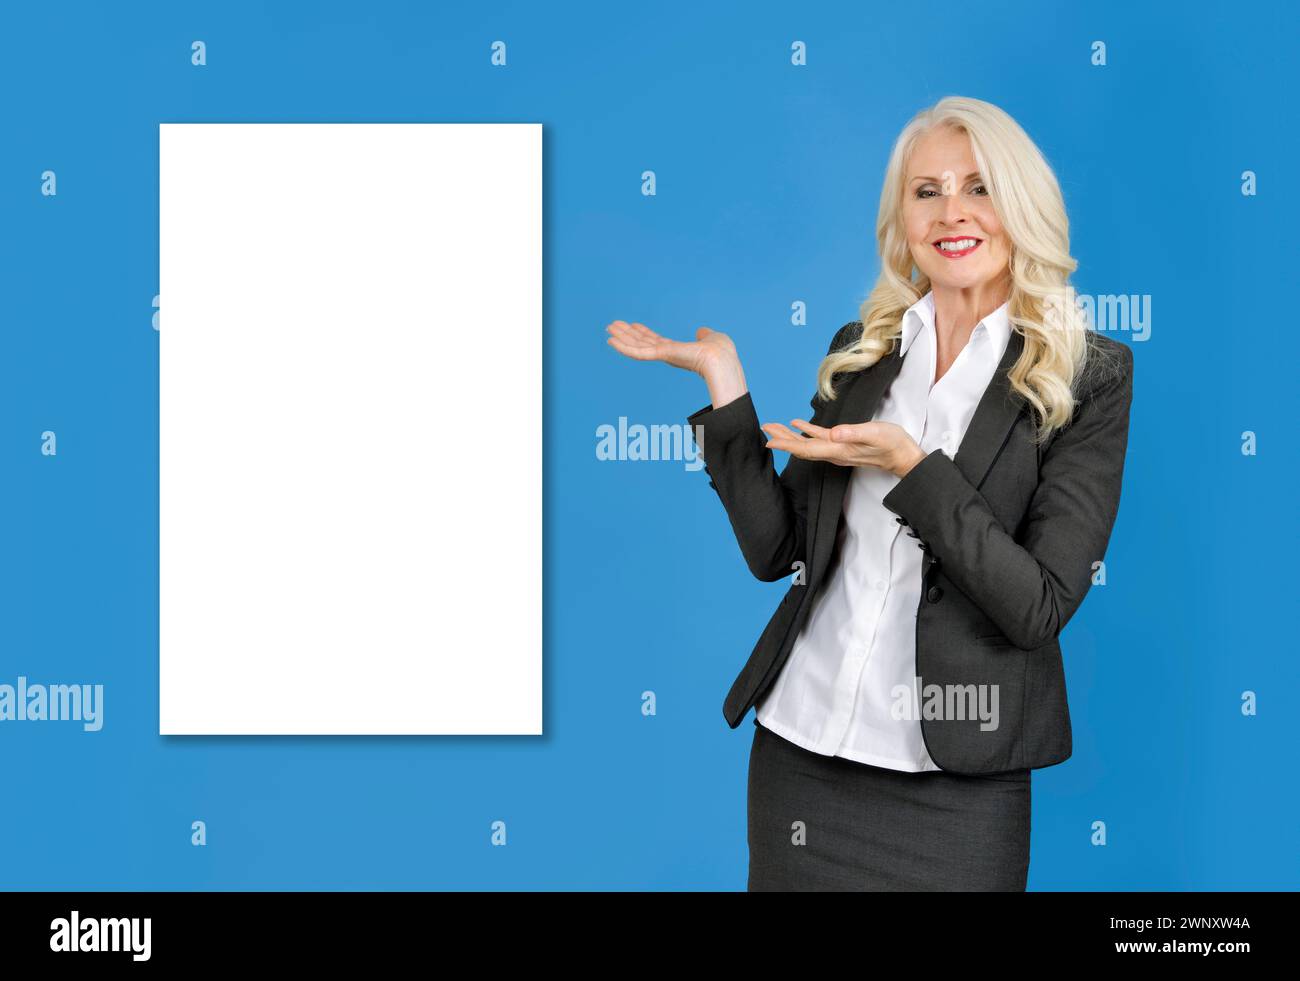 Femme d'affaires attrayante sur fond bleu avec des mains pointant vers un espace blanc vide derrière elle. Remplissez le vide Banque D'Images